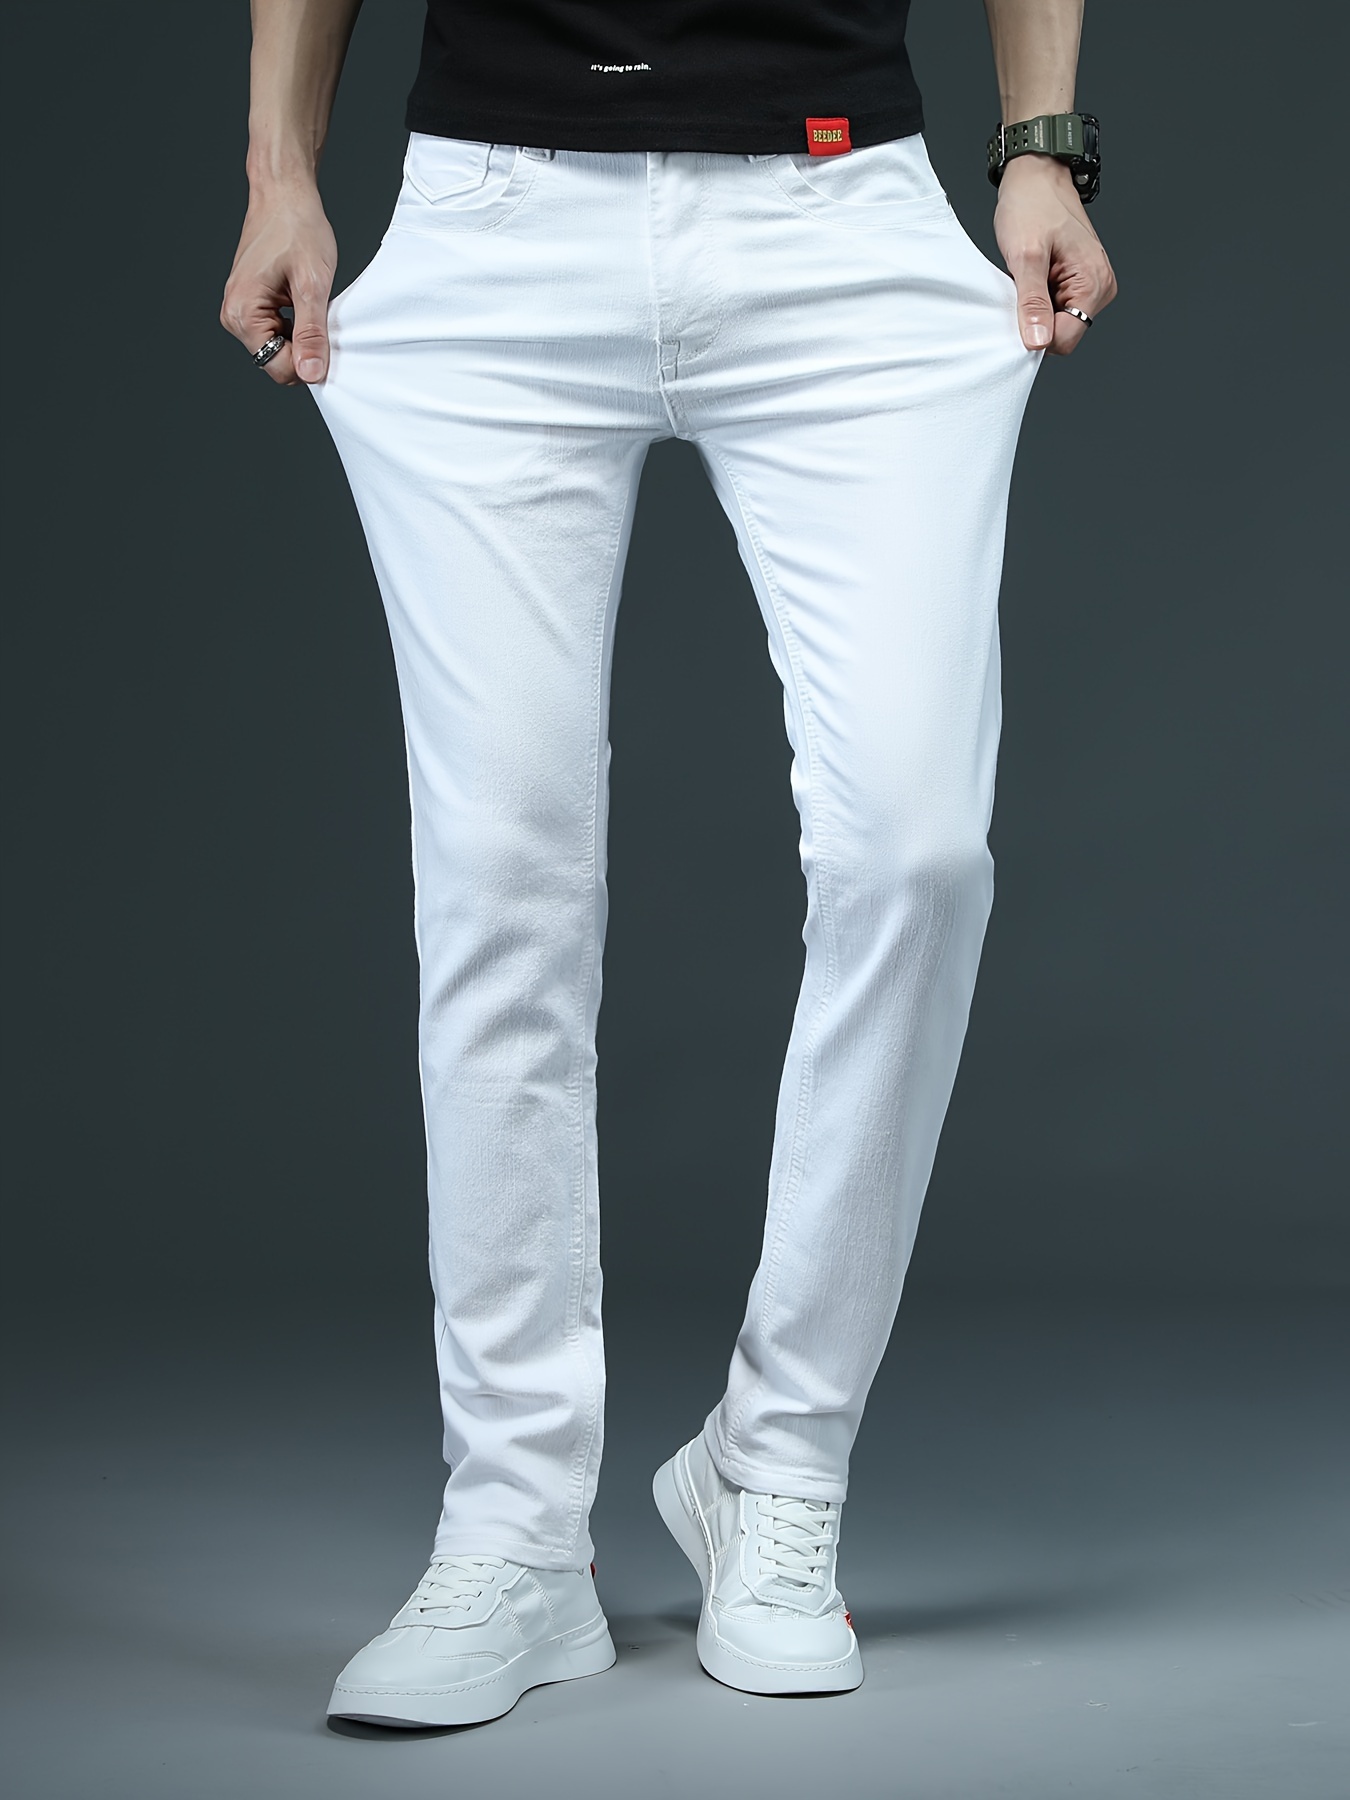 Men's White Pants, Explore our New Arrivals